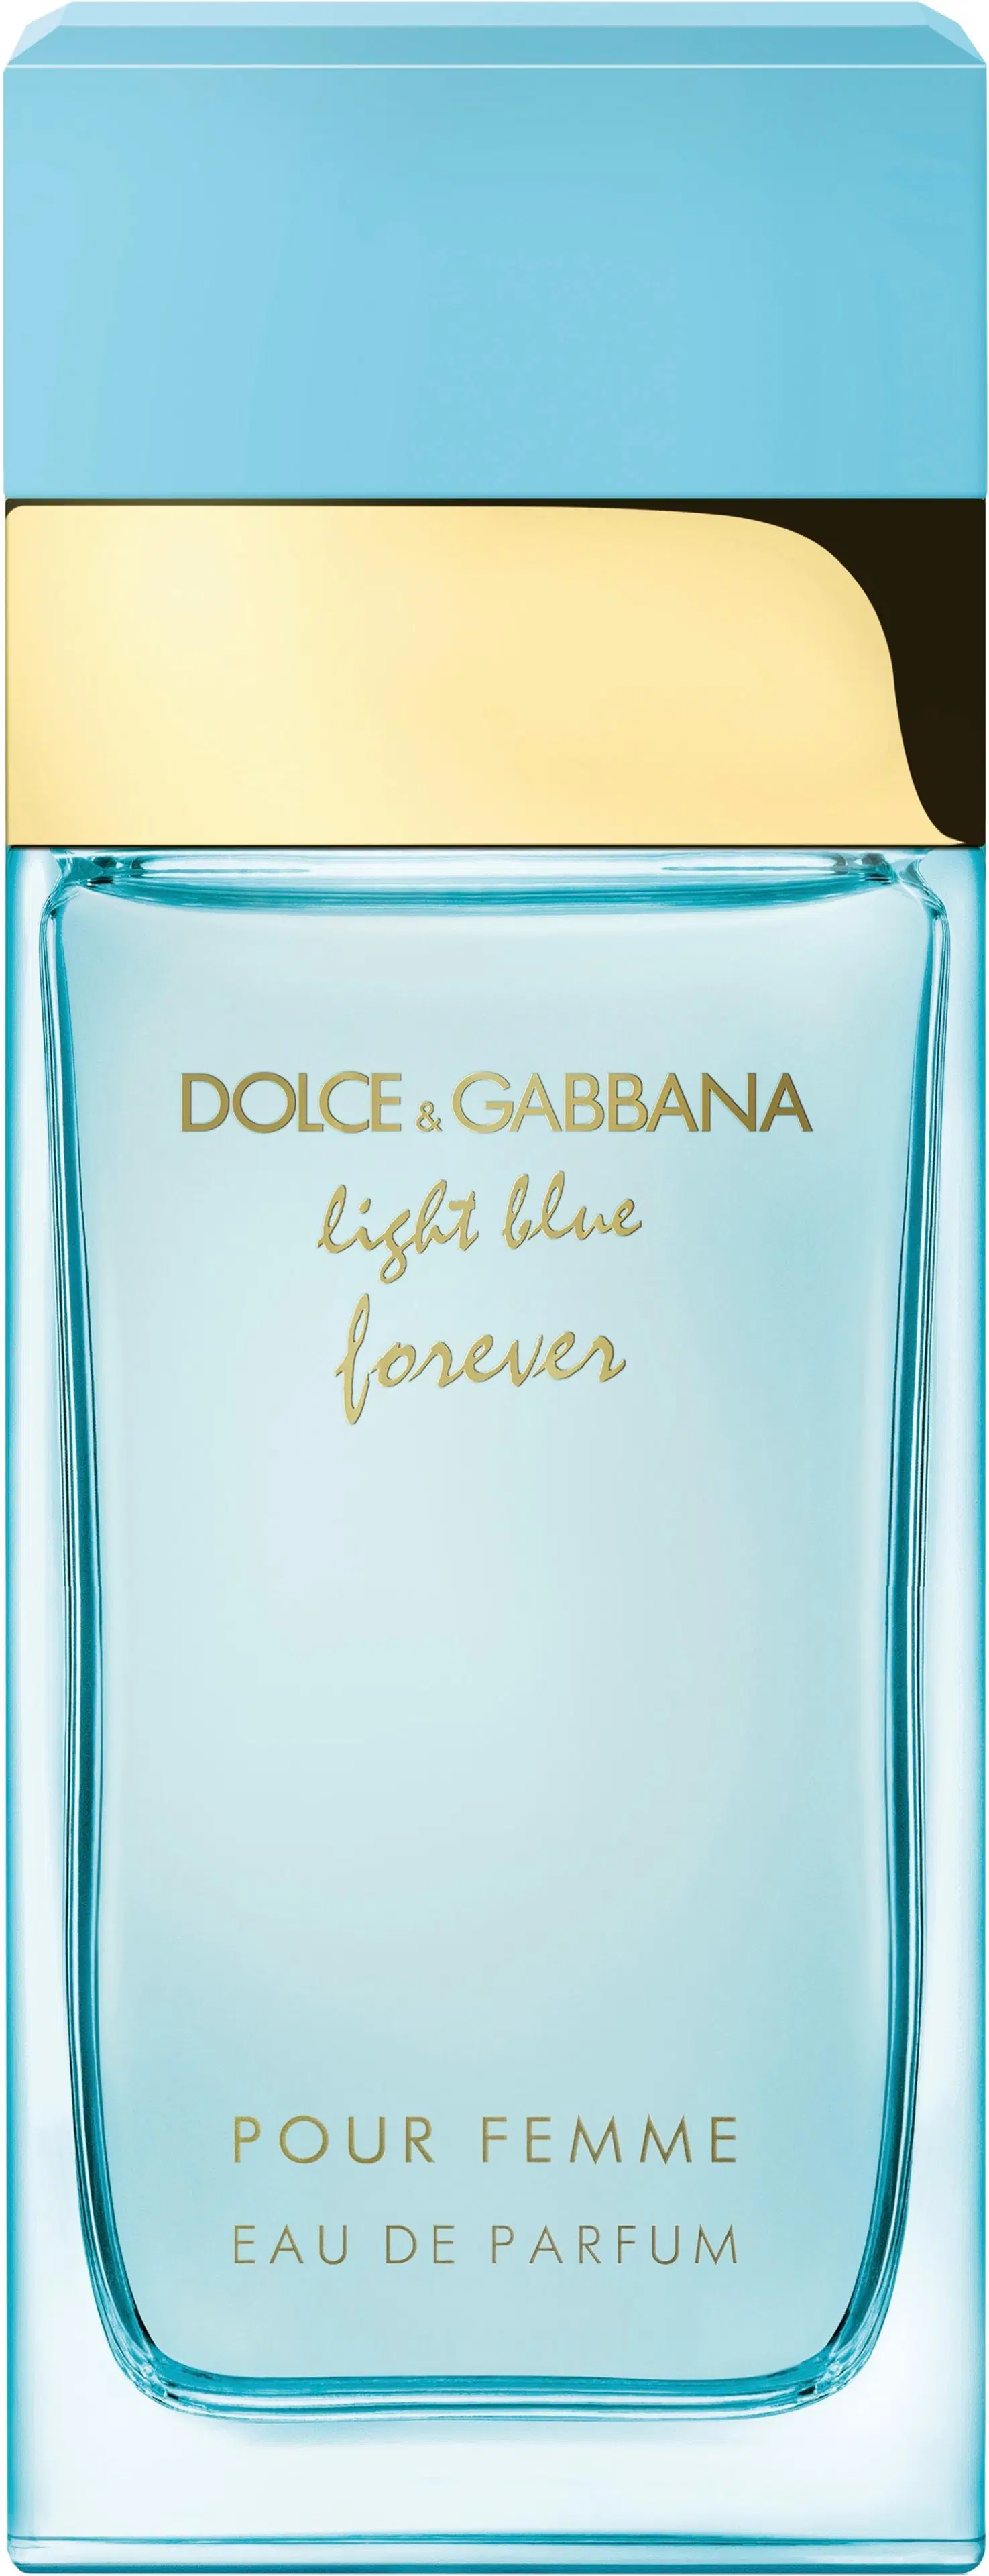 DOLCE & GABBANA Light Blue Forever Pour Femme EdP tuoksu 25 ml